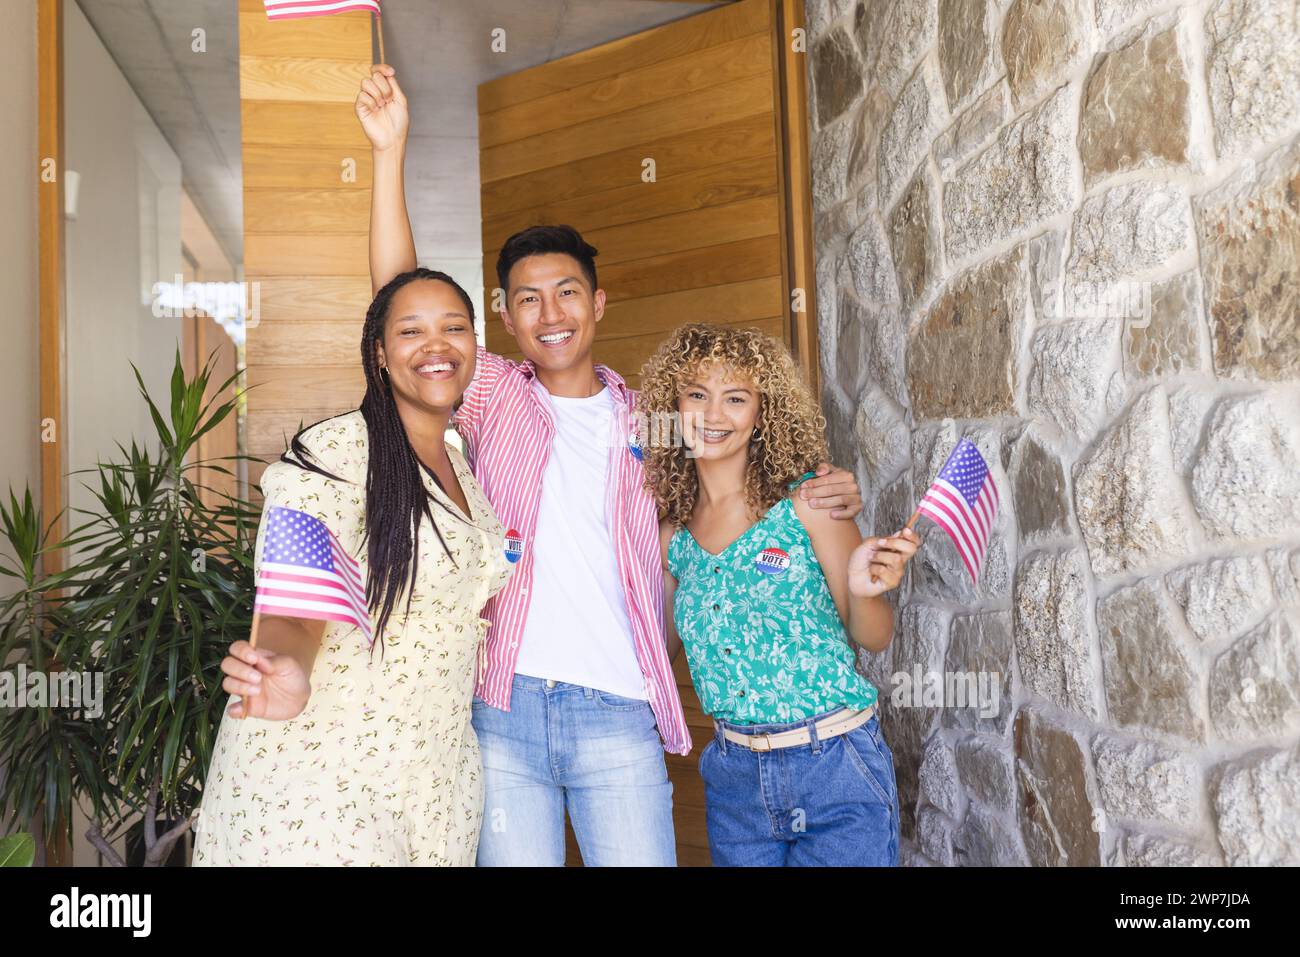 Divers amis célèbrent avec des drapeaux américains, avec un grand espace de copie Banque D'Images